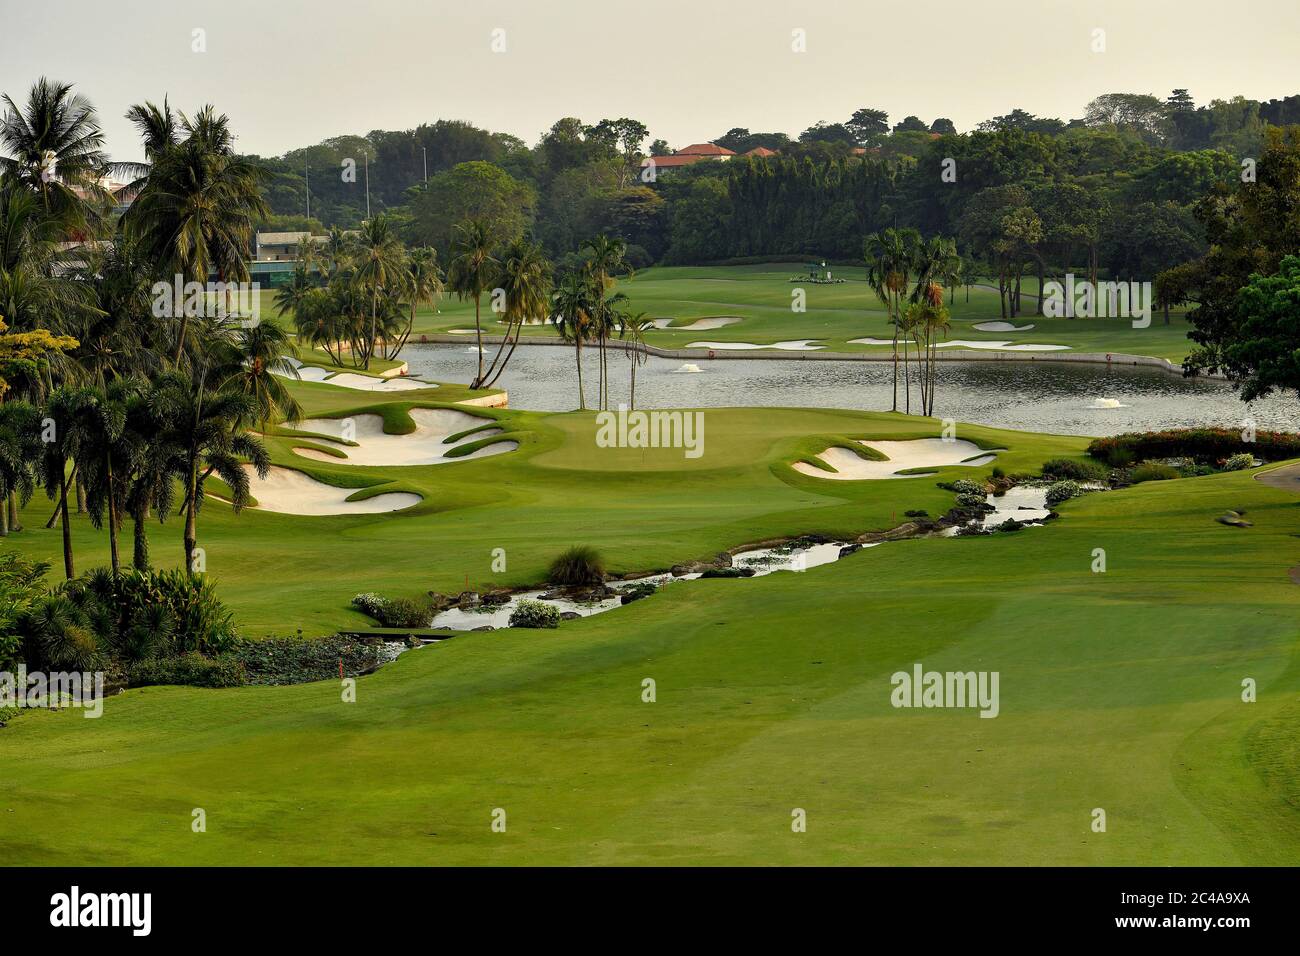 Vista del foro n. 16 del Sentosa Golf Club (Serapong) sull'Isola di Sentosa a Singapore. Foto Stock